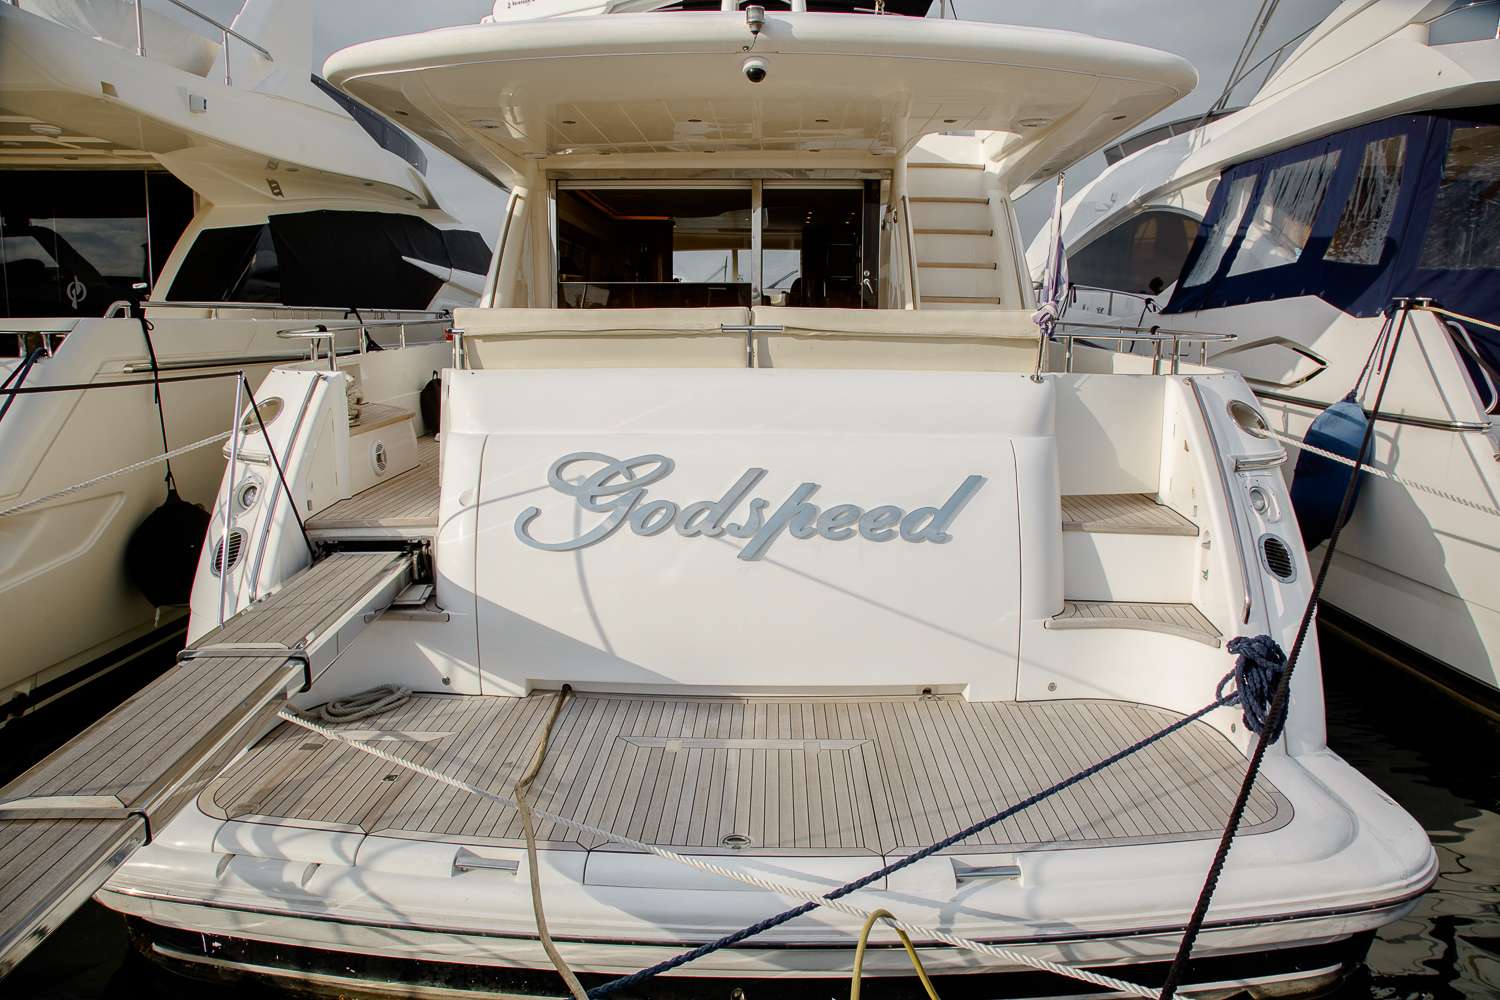 Godspeed Luxury Yacht Charter in Greece